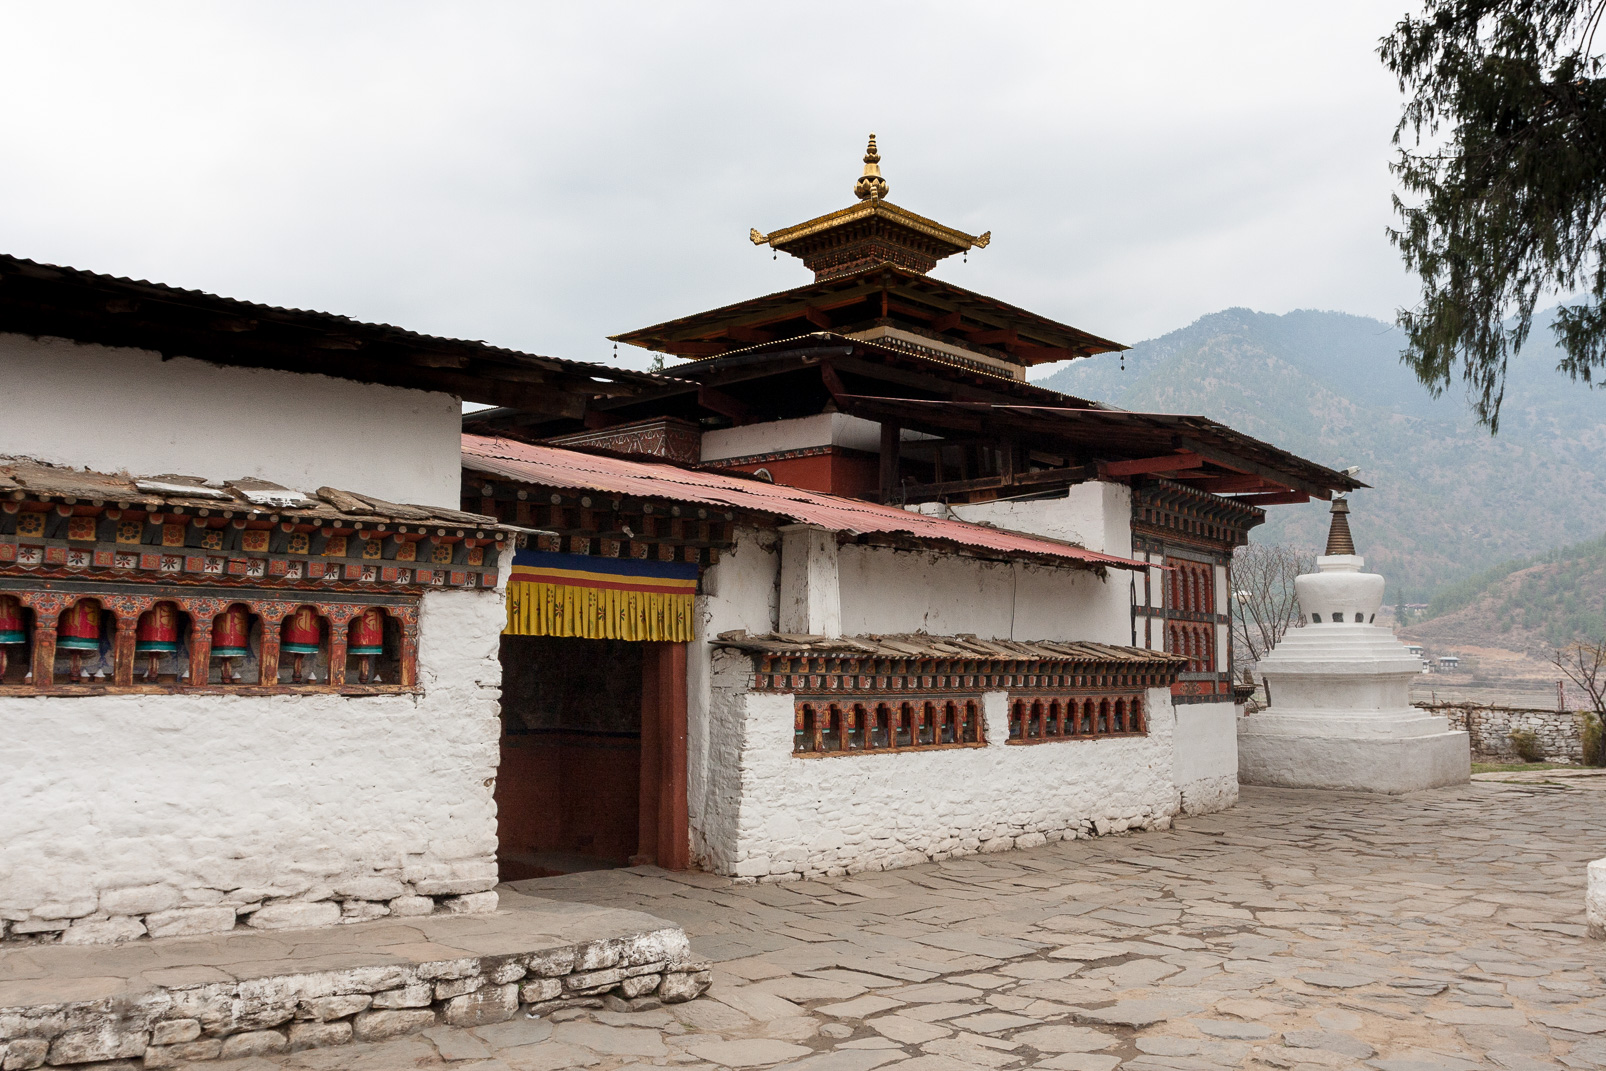 Temples jumeaux de Kyichu Lhakhang. Un temple neuf fut construit en 1968 selon le souhait de la reine du Bhoutan dans  le même style que le temple ancien auquel il est accolé et qui date du 7ème siècle et est très vénéré.